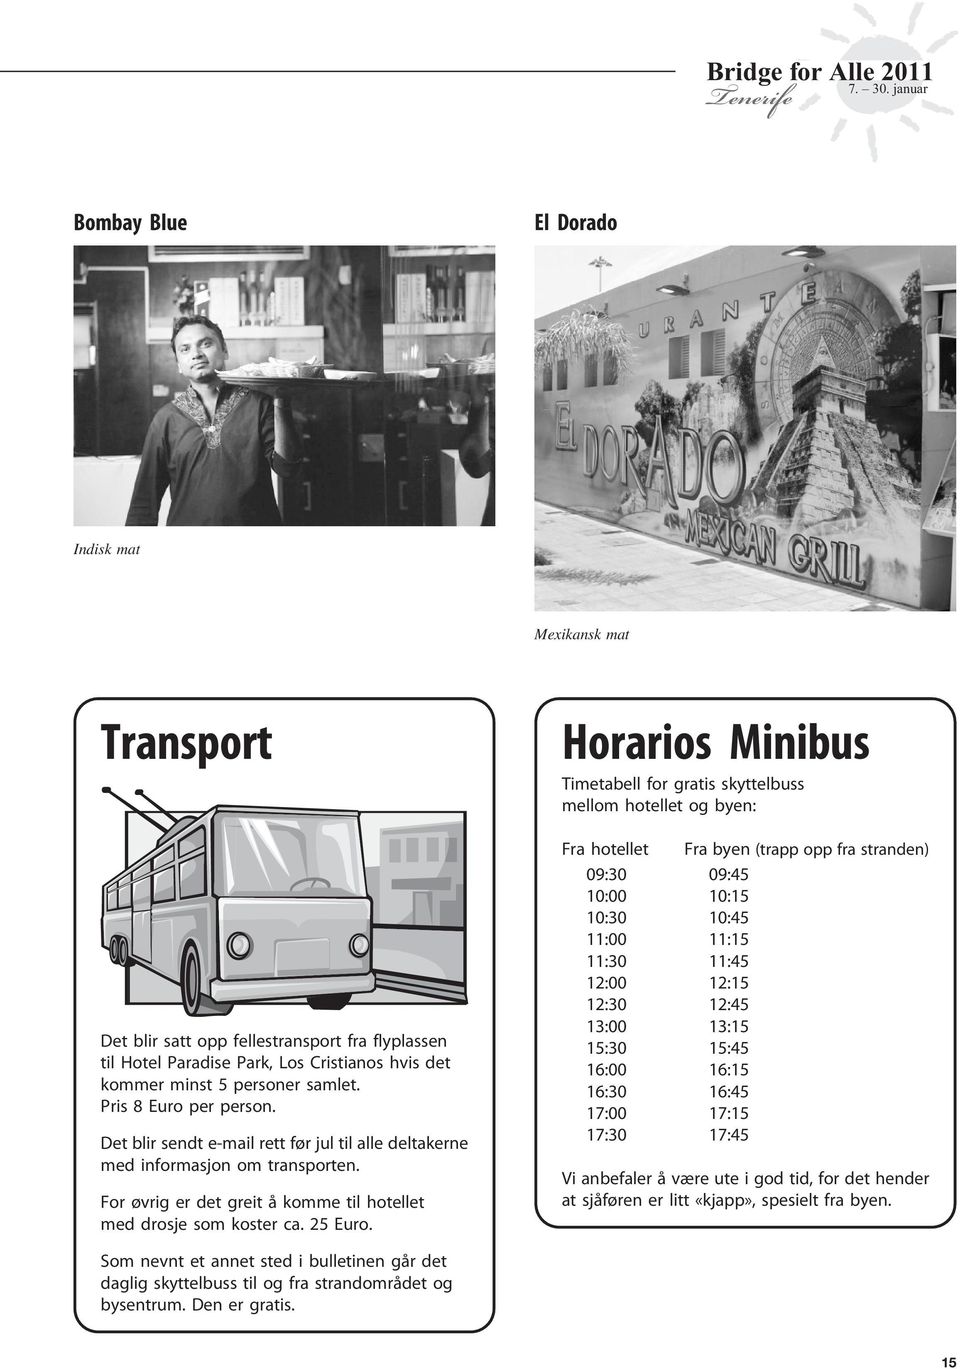 Horarios Minibus Timetabell for gratis skyttelbuss mellom hotellet og byen: Fra hotellet Fra byen (trapp opp fra stranden) 09:30 09:45 10:00 10:15 10:30 10:45 11:00 11:15 11:30 11:45 12:00 12:15